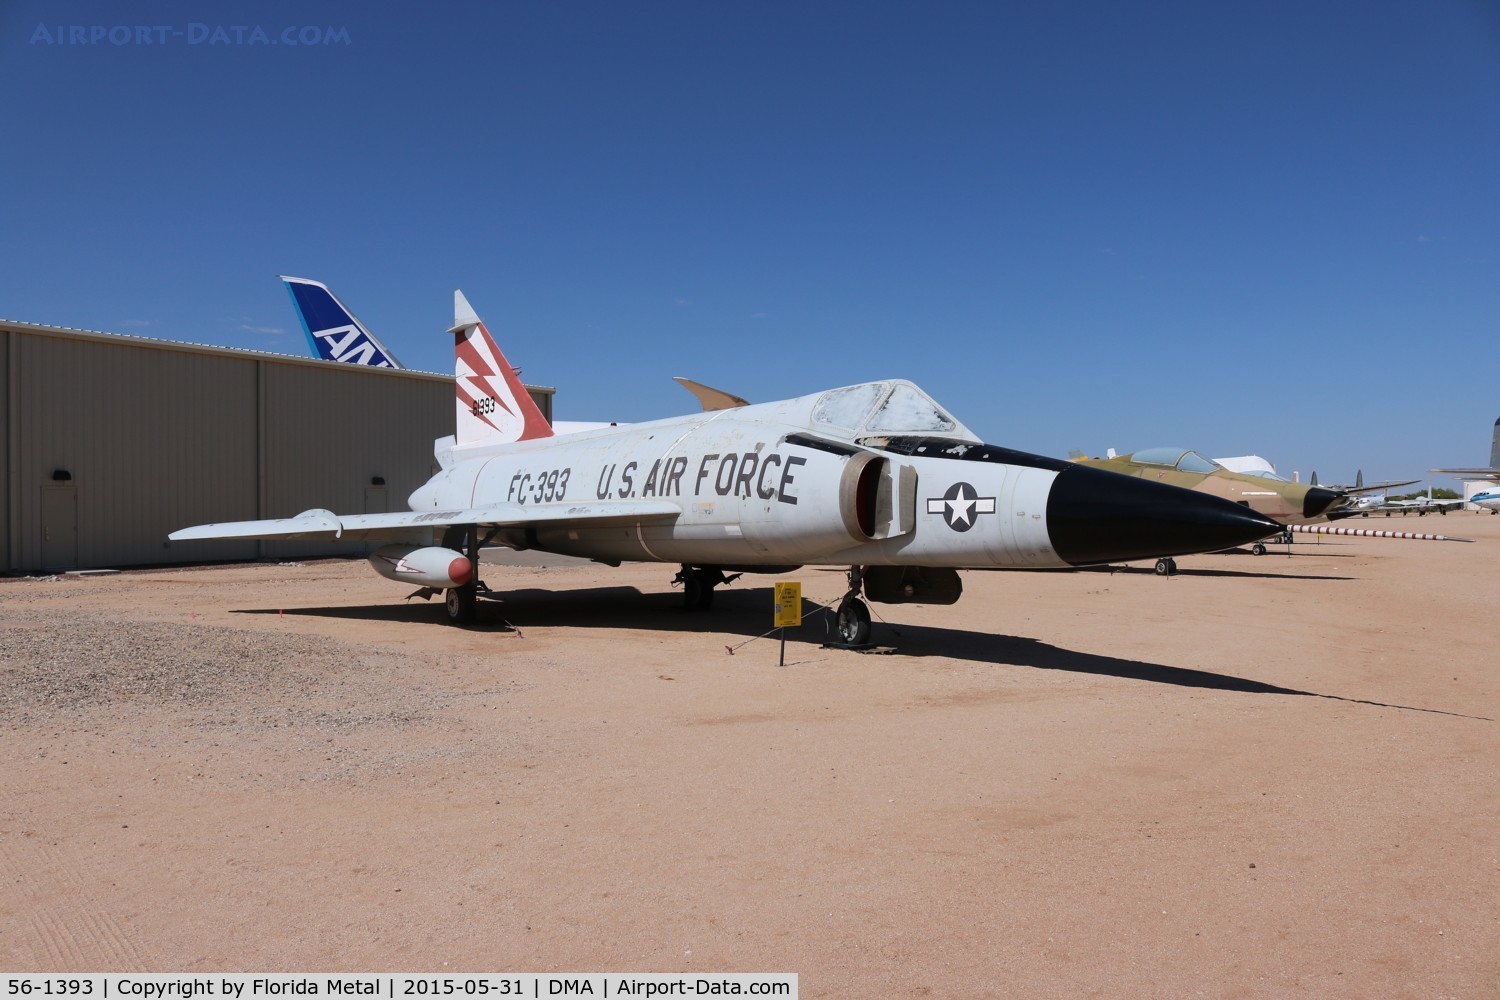 56-1393, 1956 Convair F-102A Delta Dagger C/N 8-10-340, F-102A